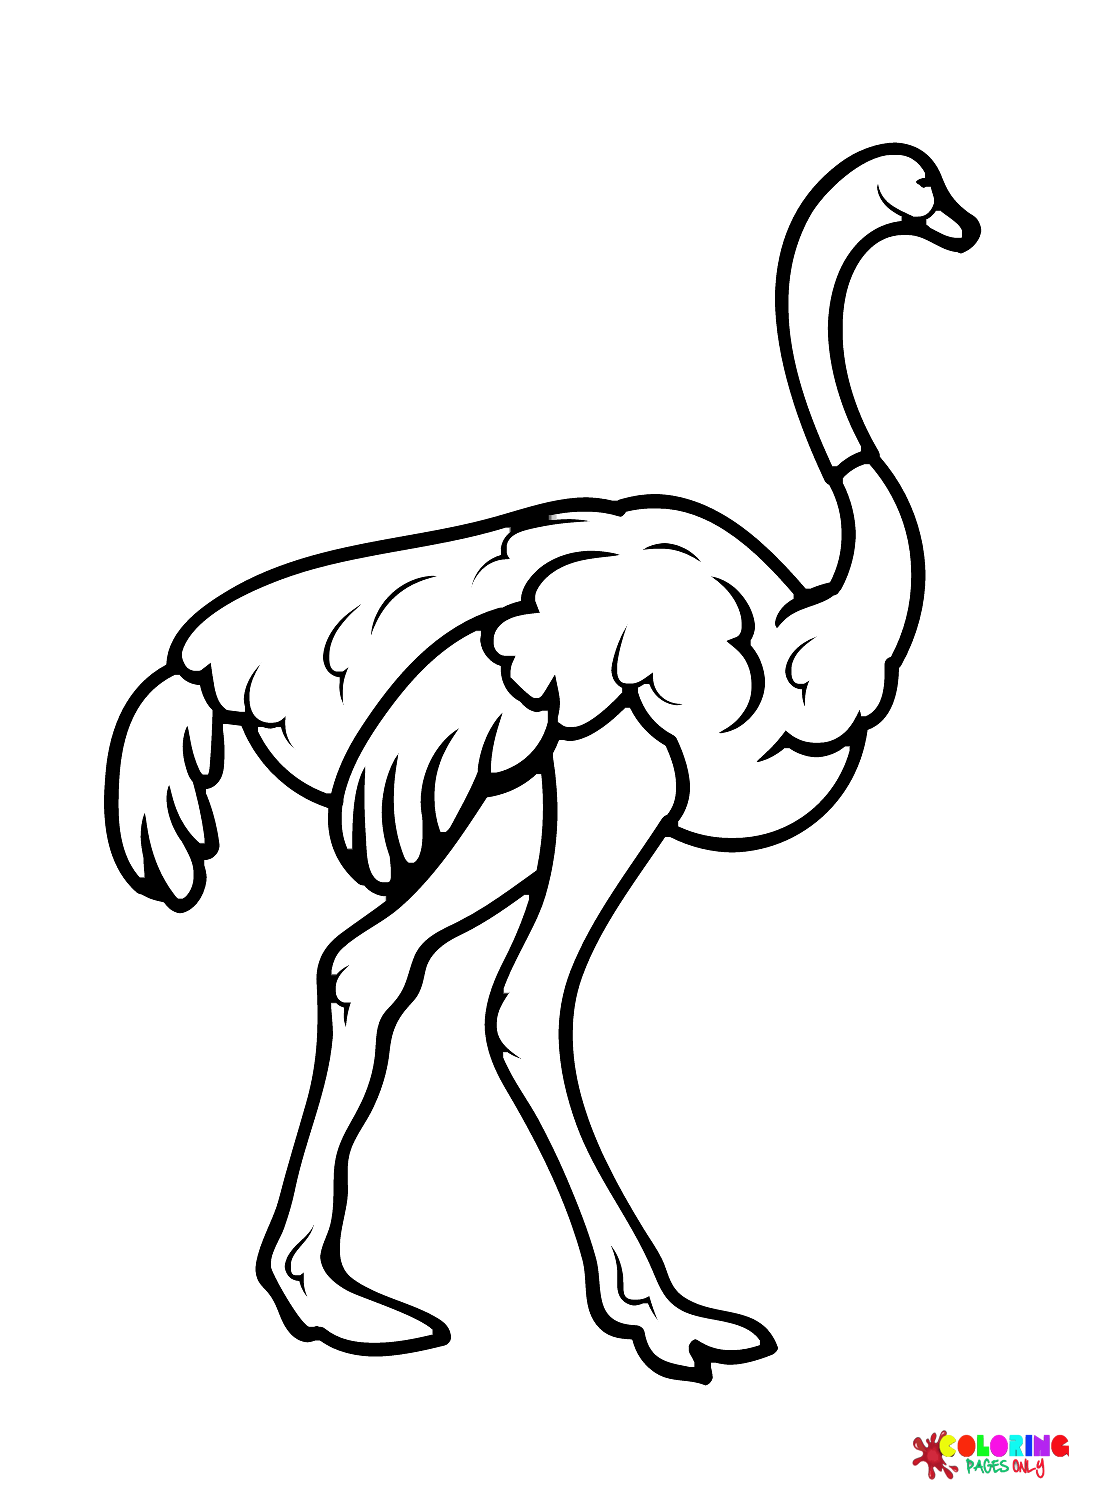 Распечатанный страус из страуса